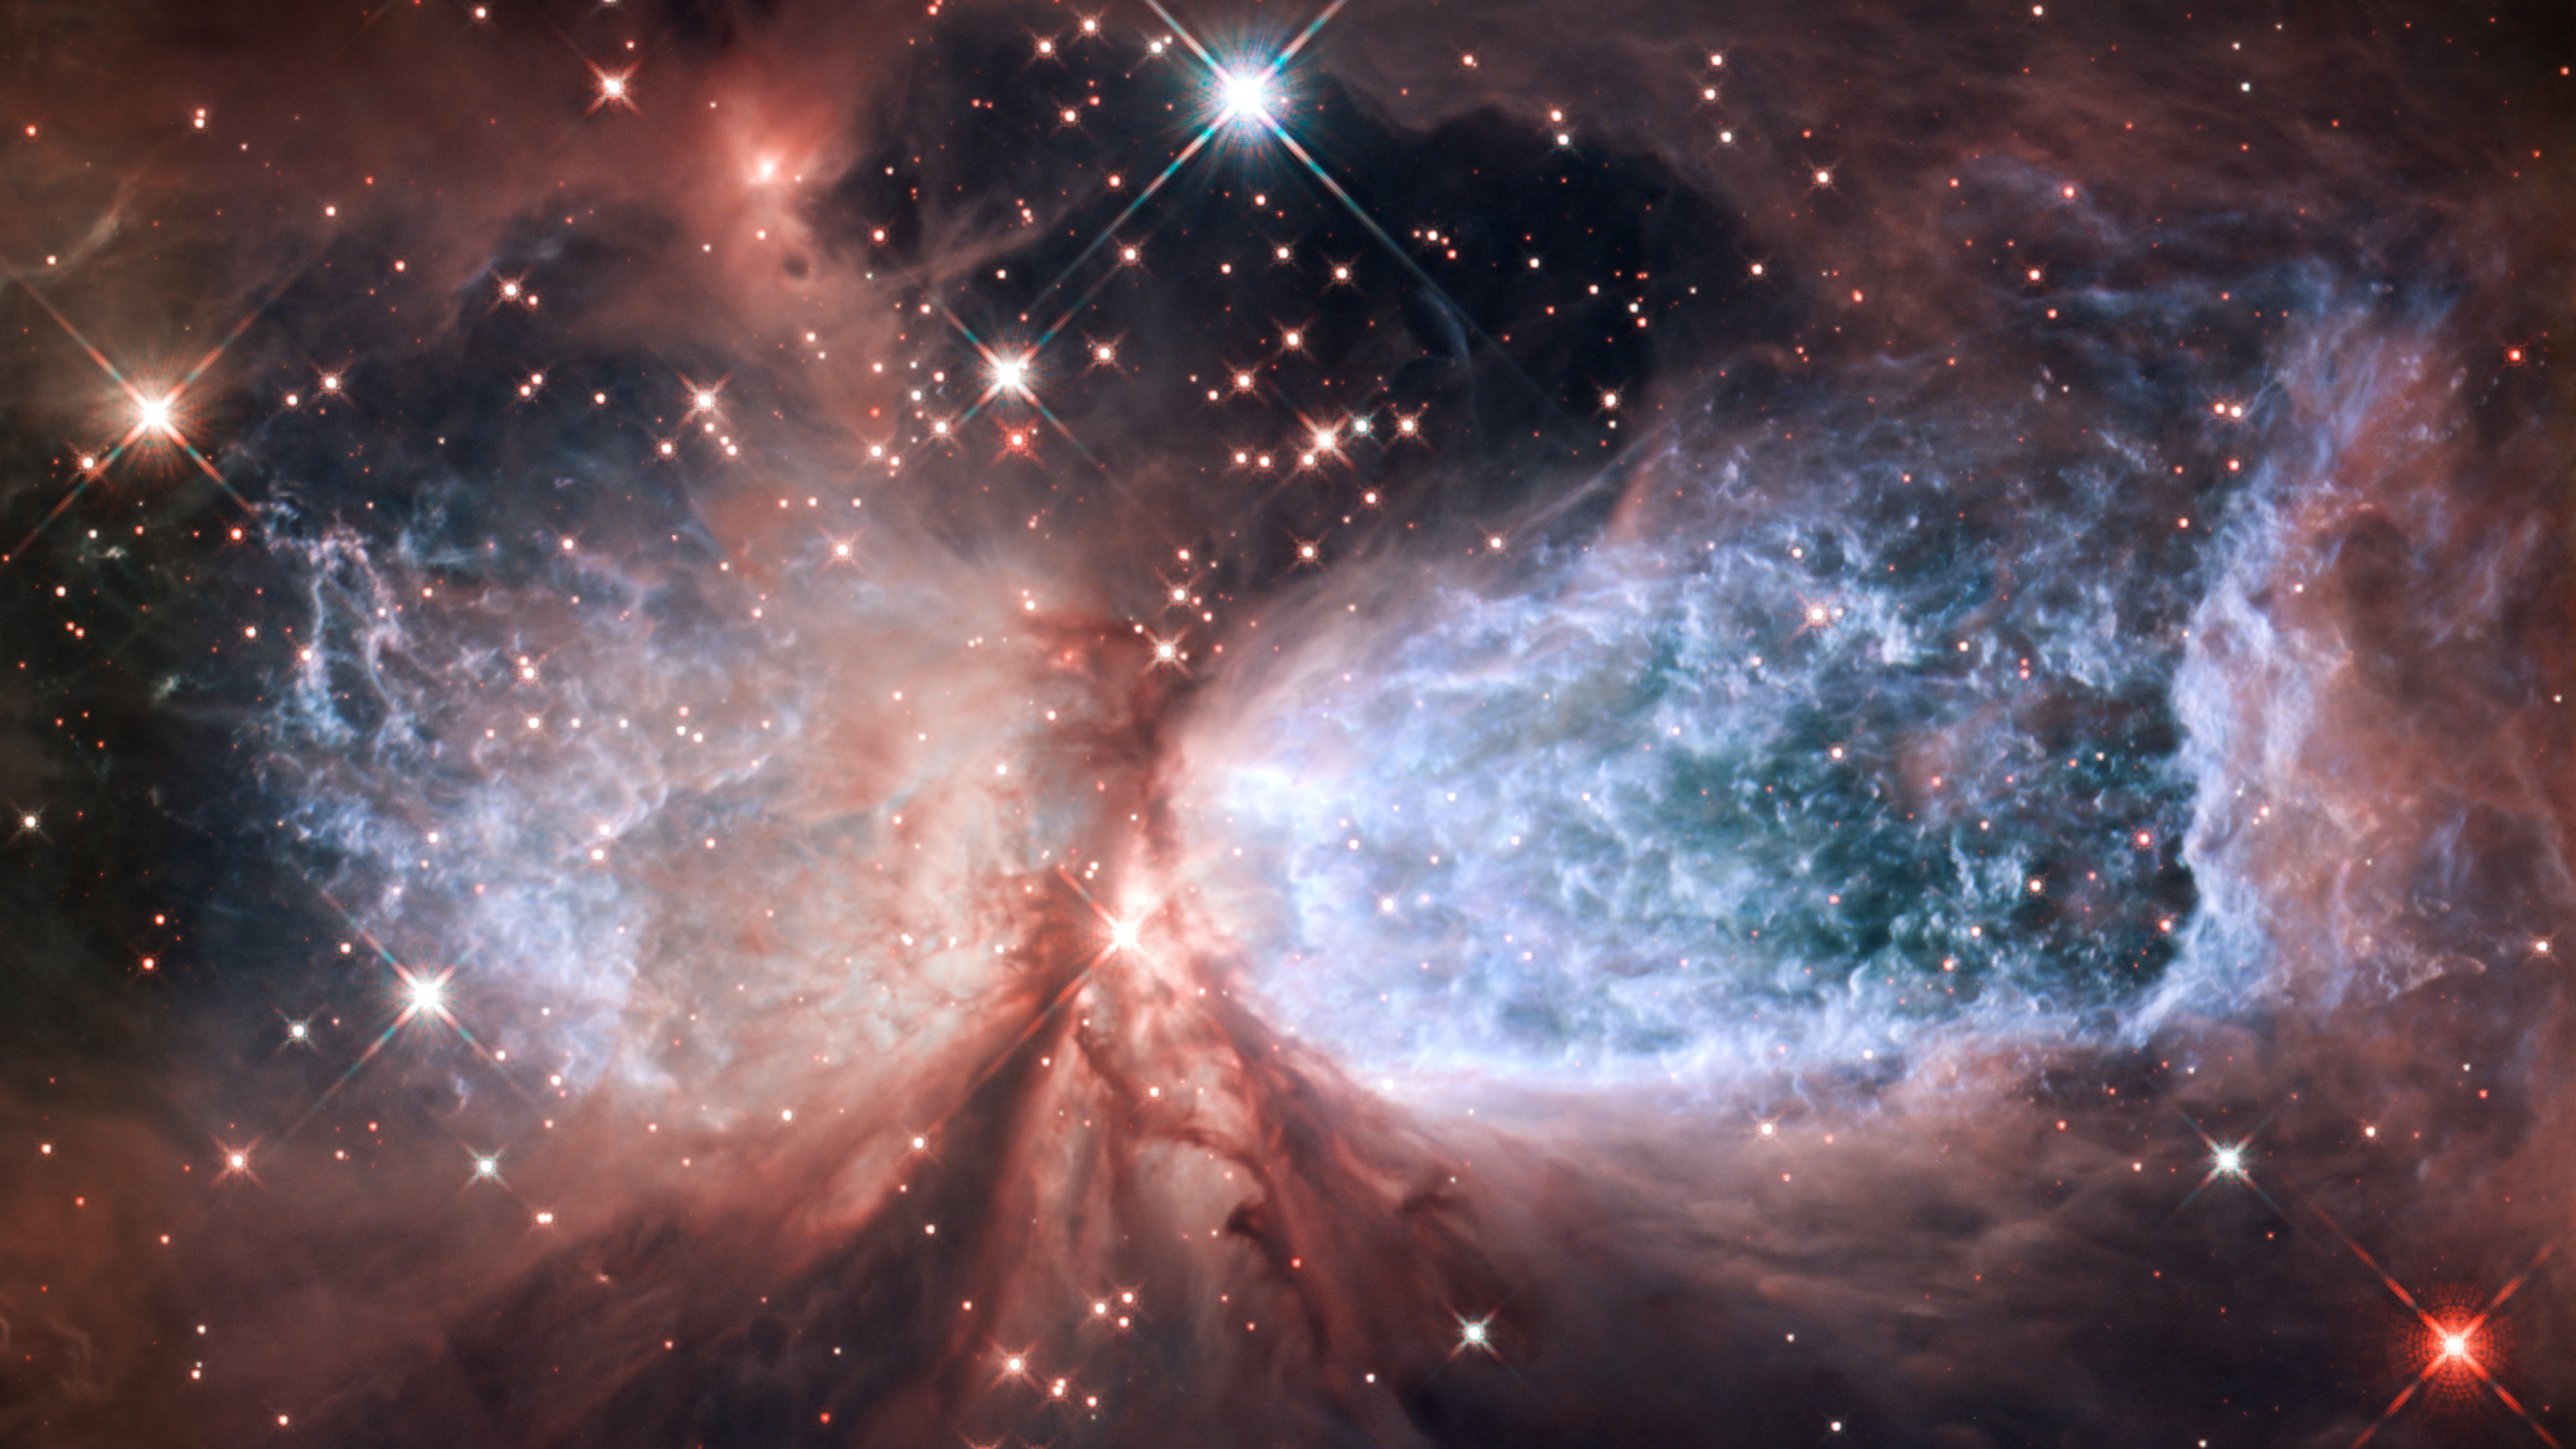 Nebula NASA Hubble 4356x2450